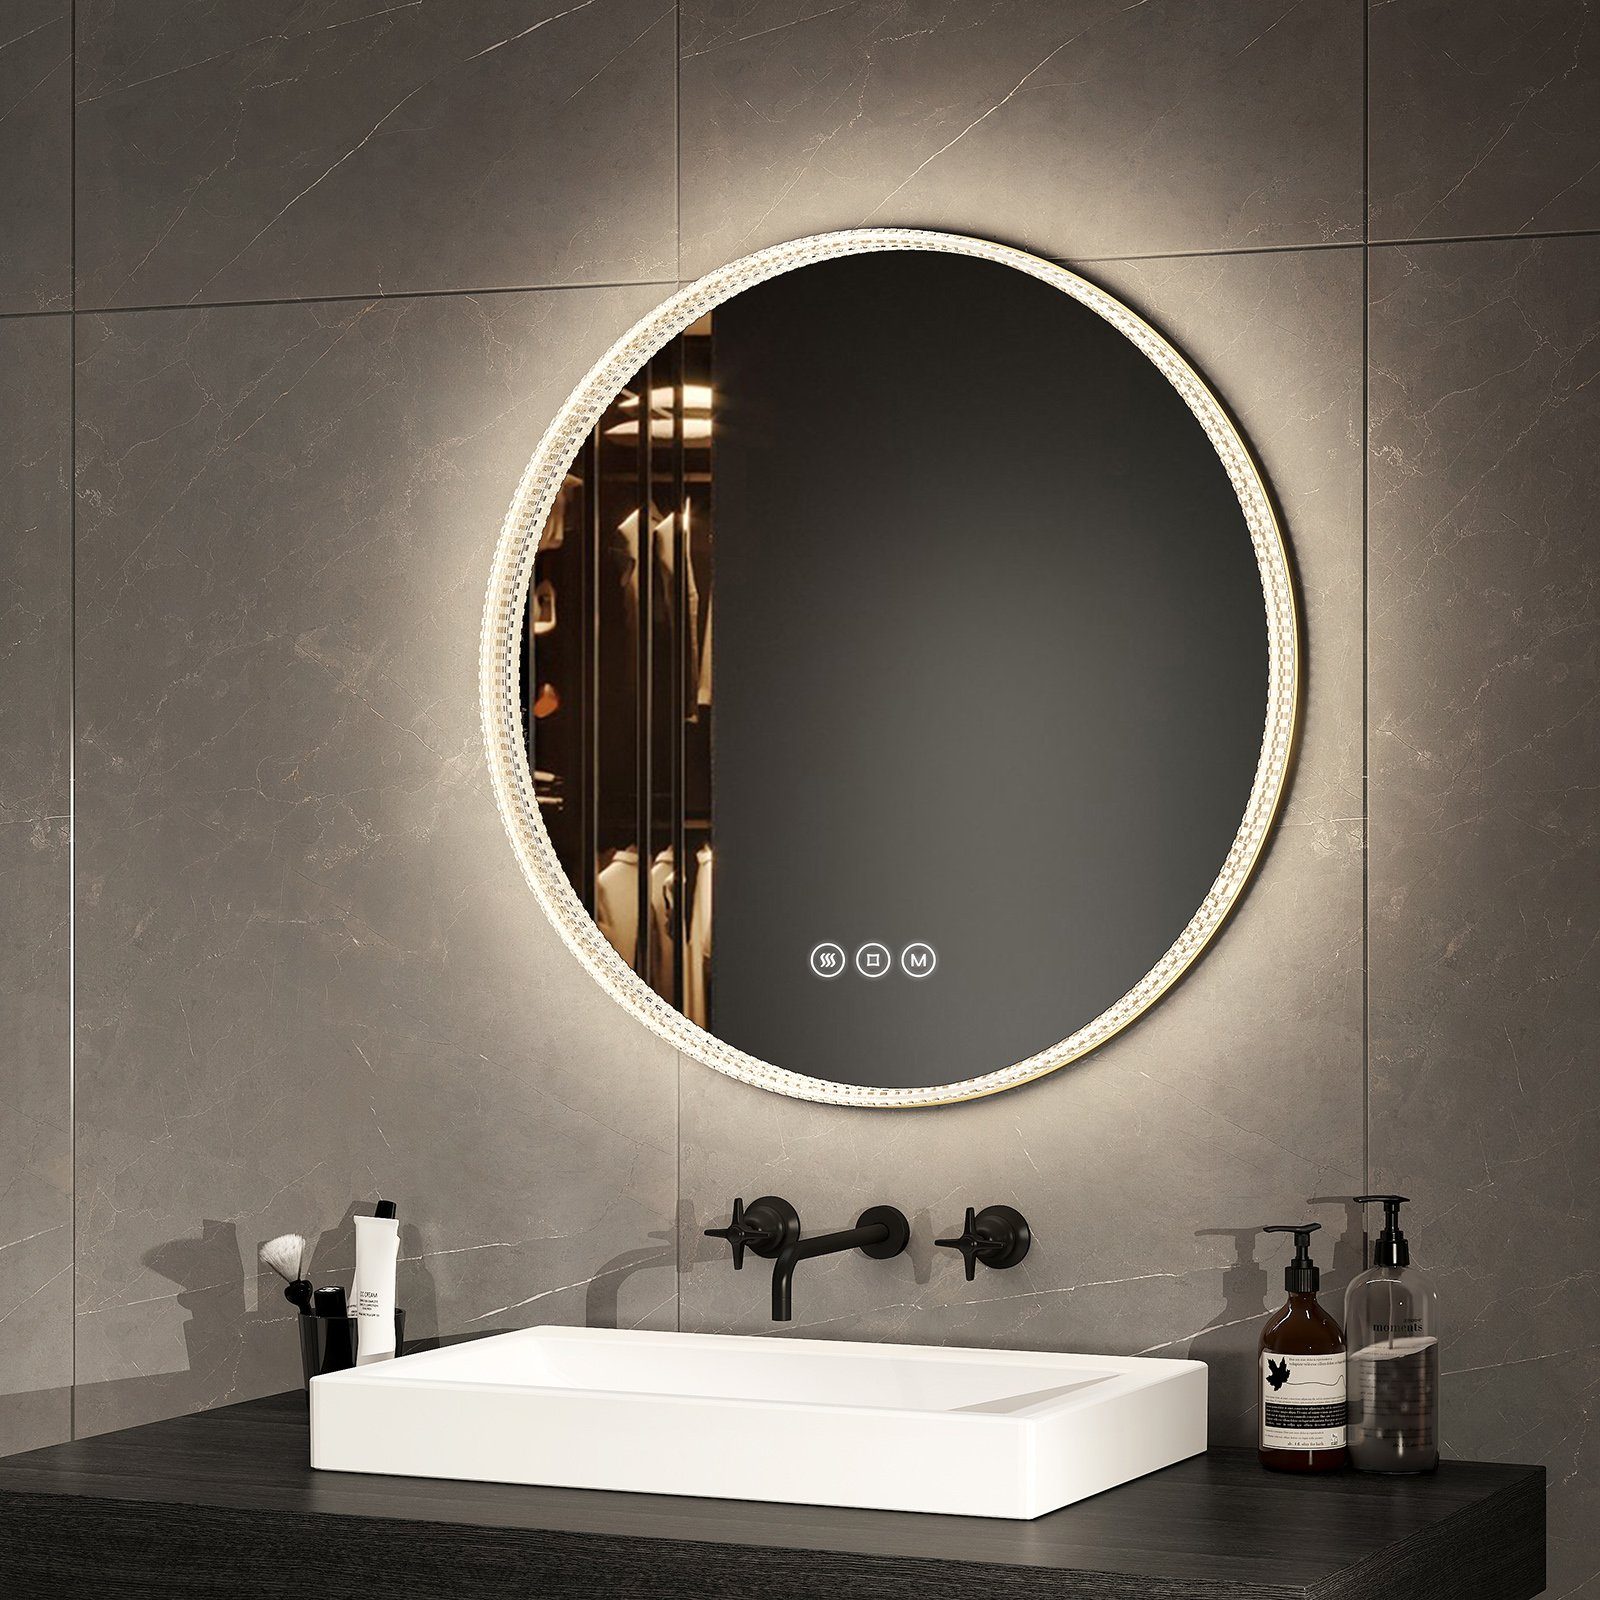 EMKE Badspiegel 60 cm LED Wandspiegel Spiegel, Acryl 3 Memory-Funktion Lichtfarben Rand Rahmen Badezimmerspiegel Touch, mit Goldener Antibeschlage,Dimmbar